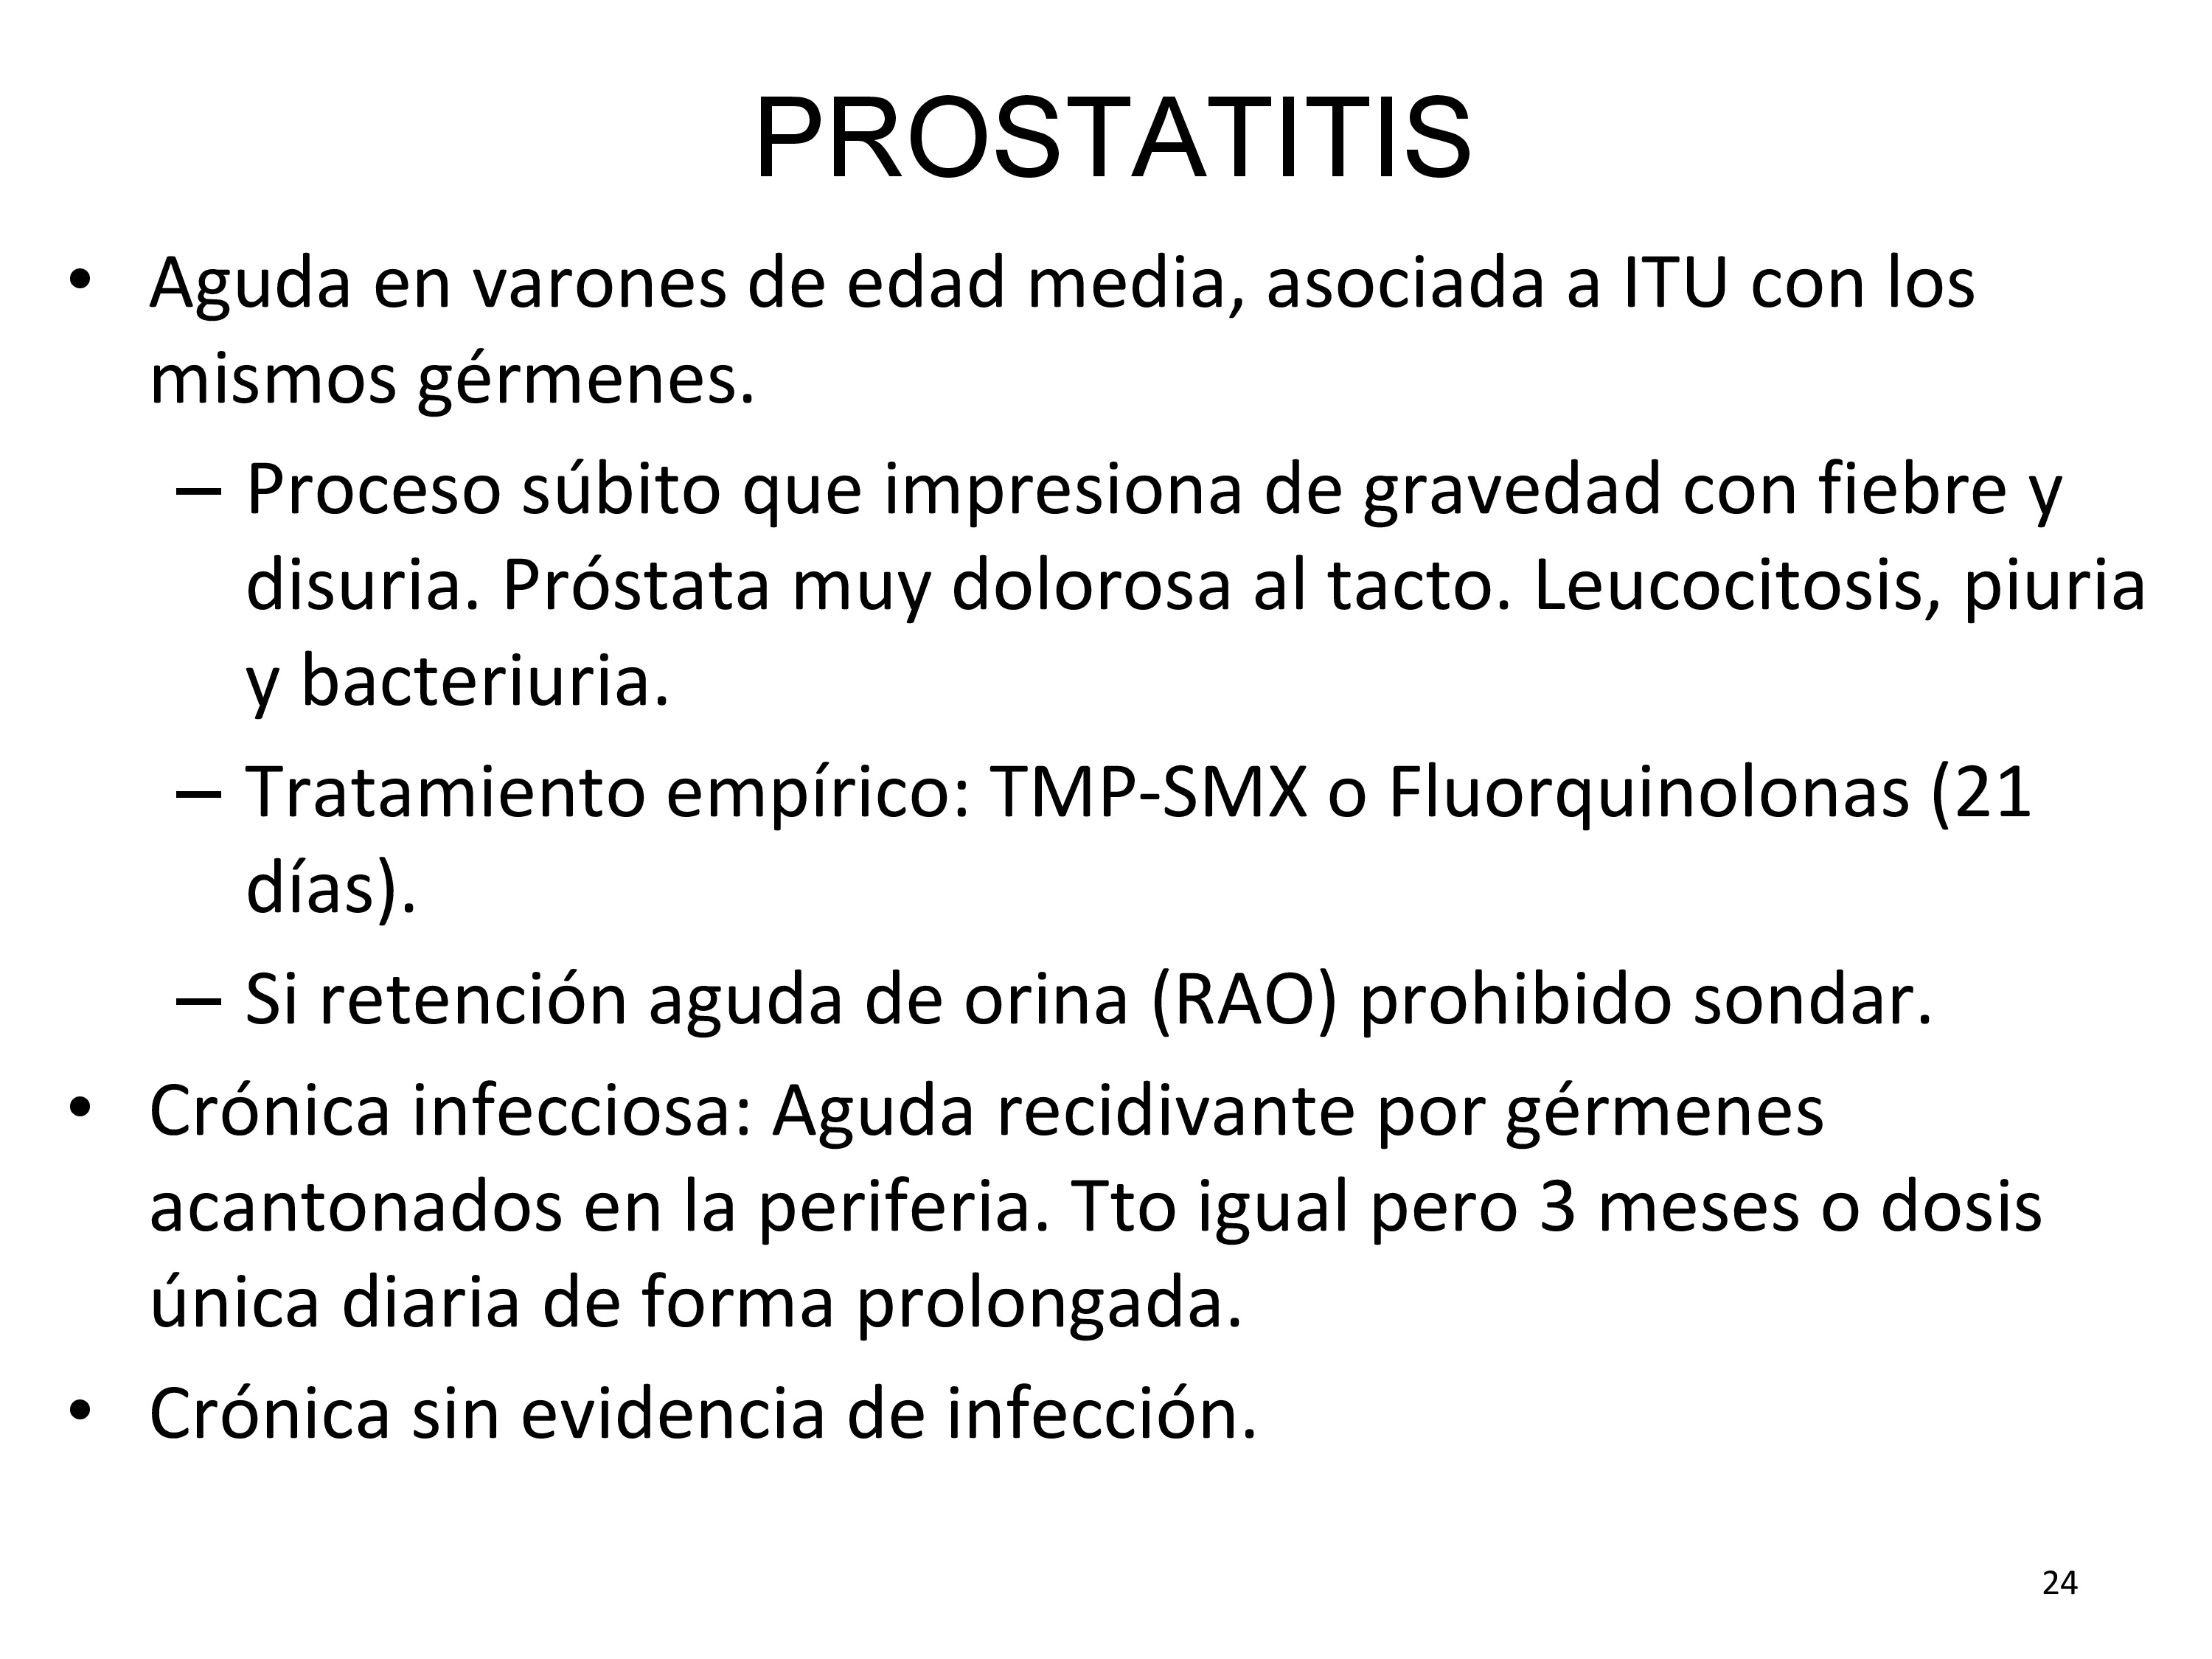 En caso de retención aguda de orina y prostatitis aguda debe realizarse una cistostomía suprapúbica.